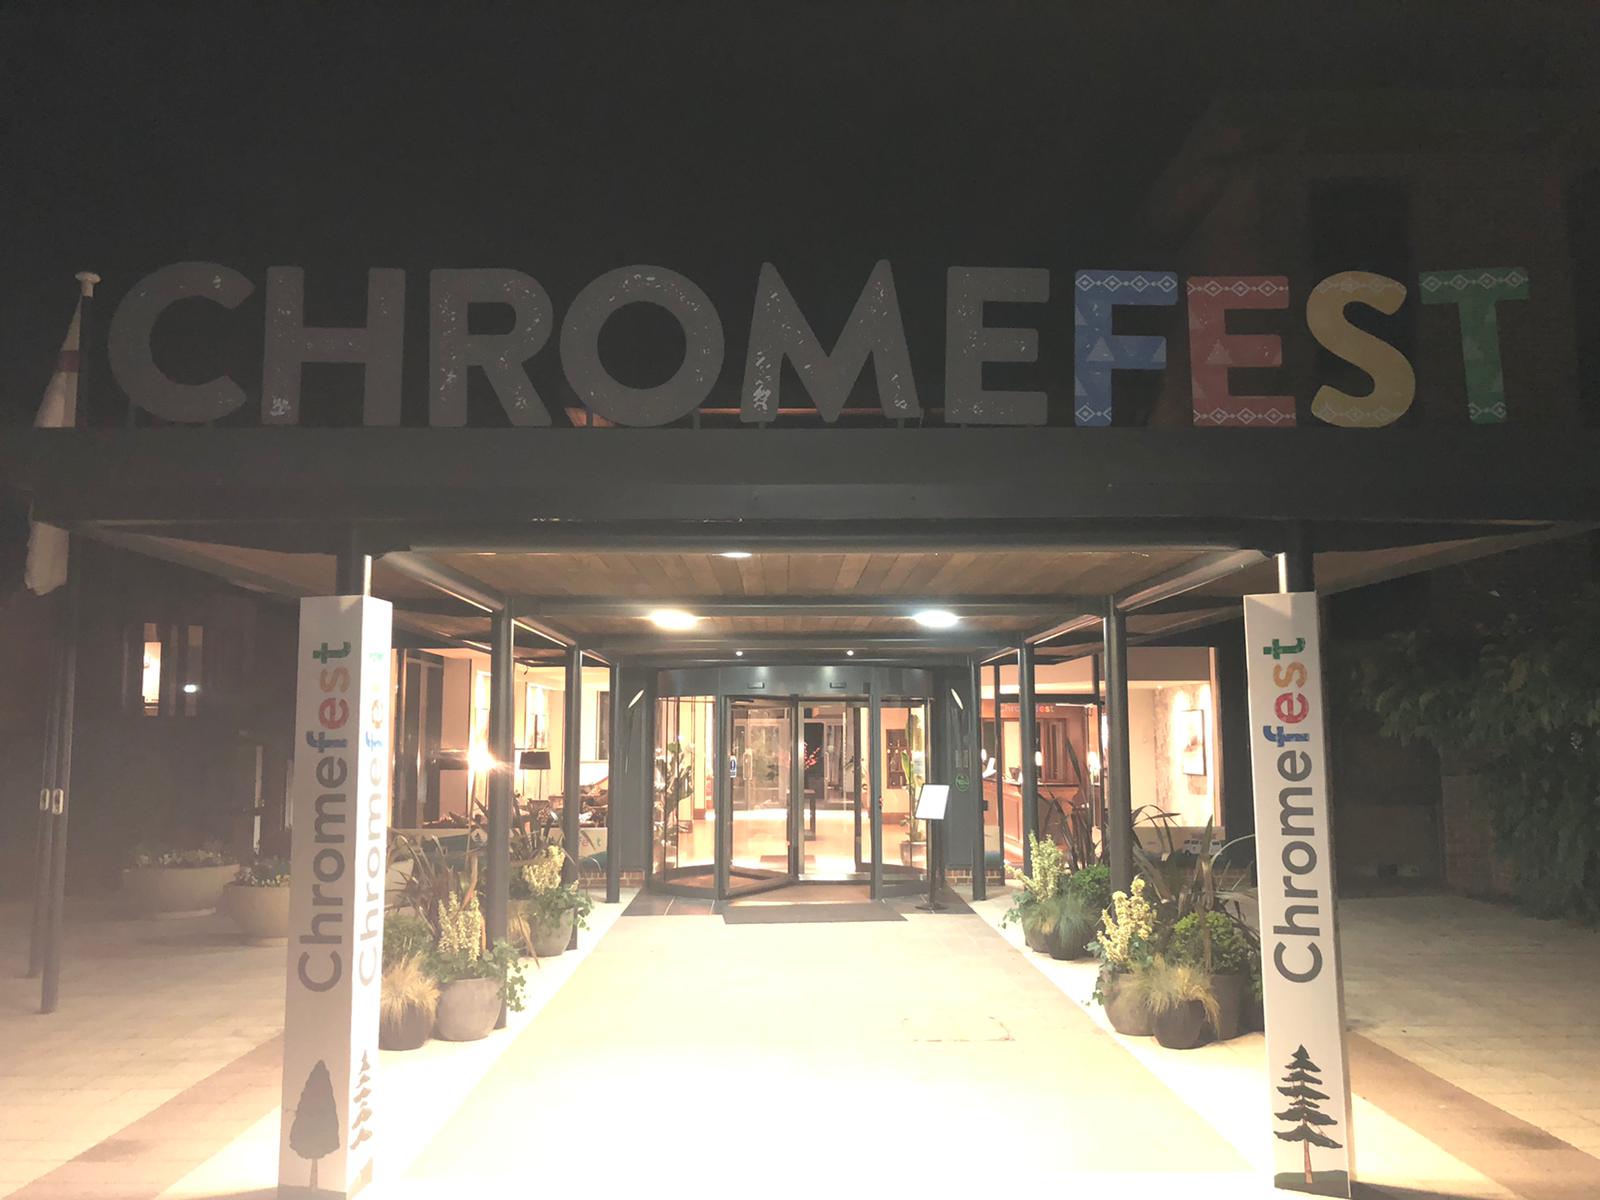 chromefest-event-graphic-installation